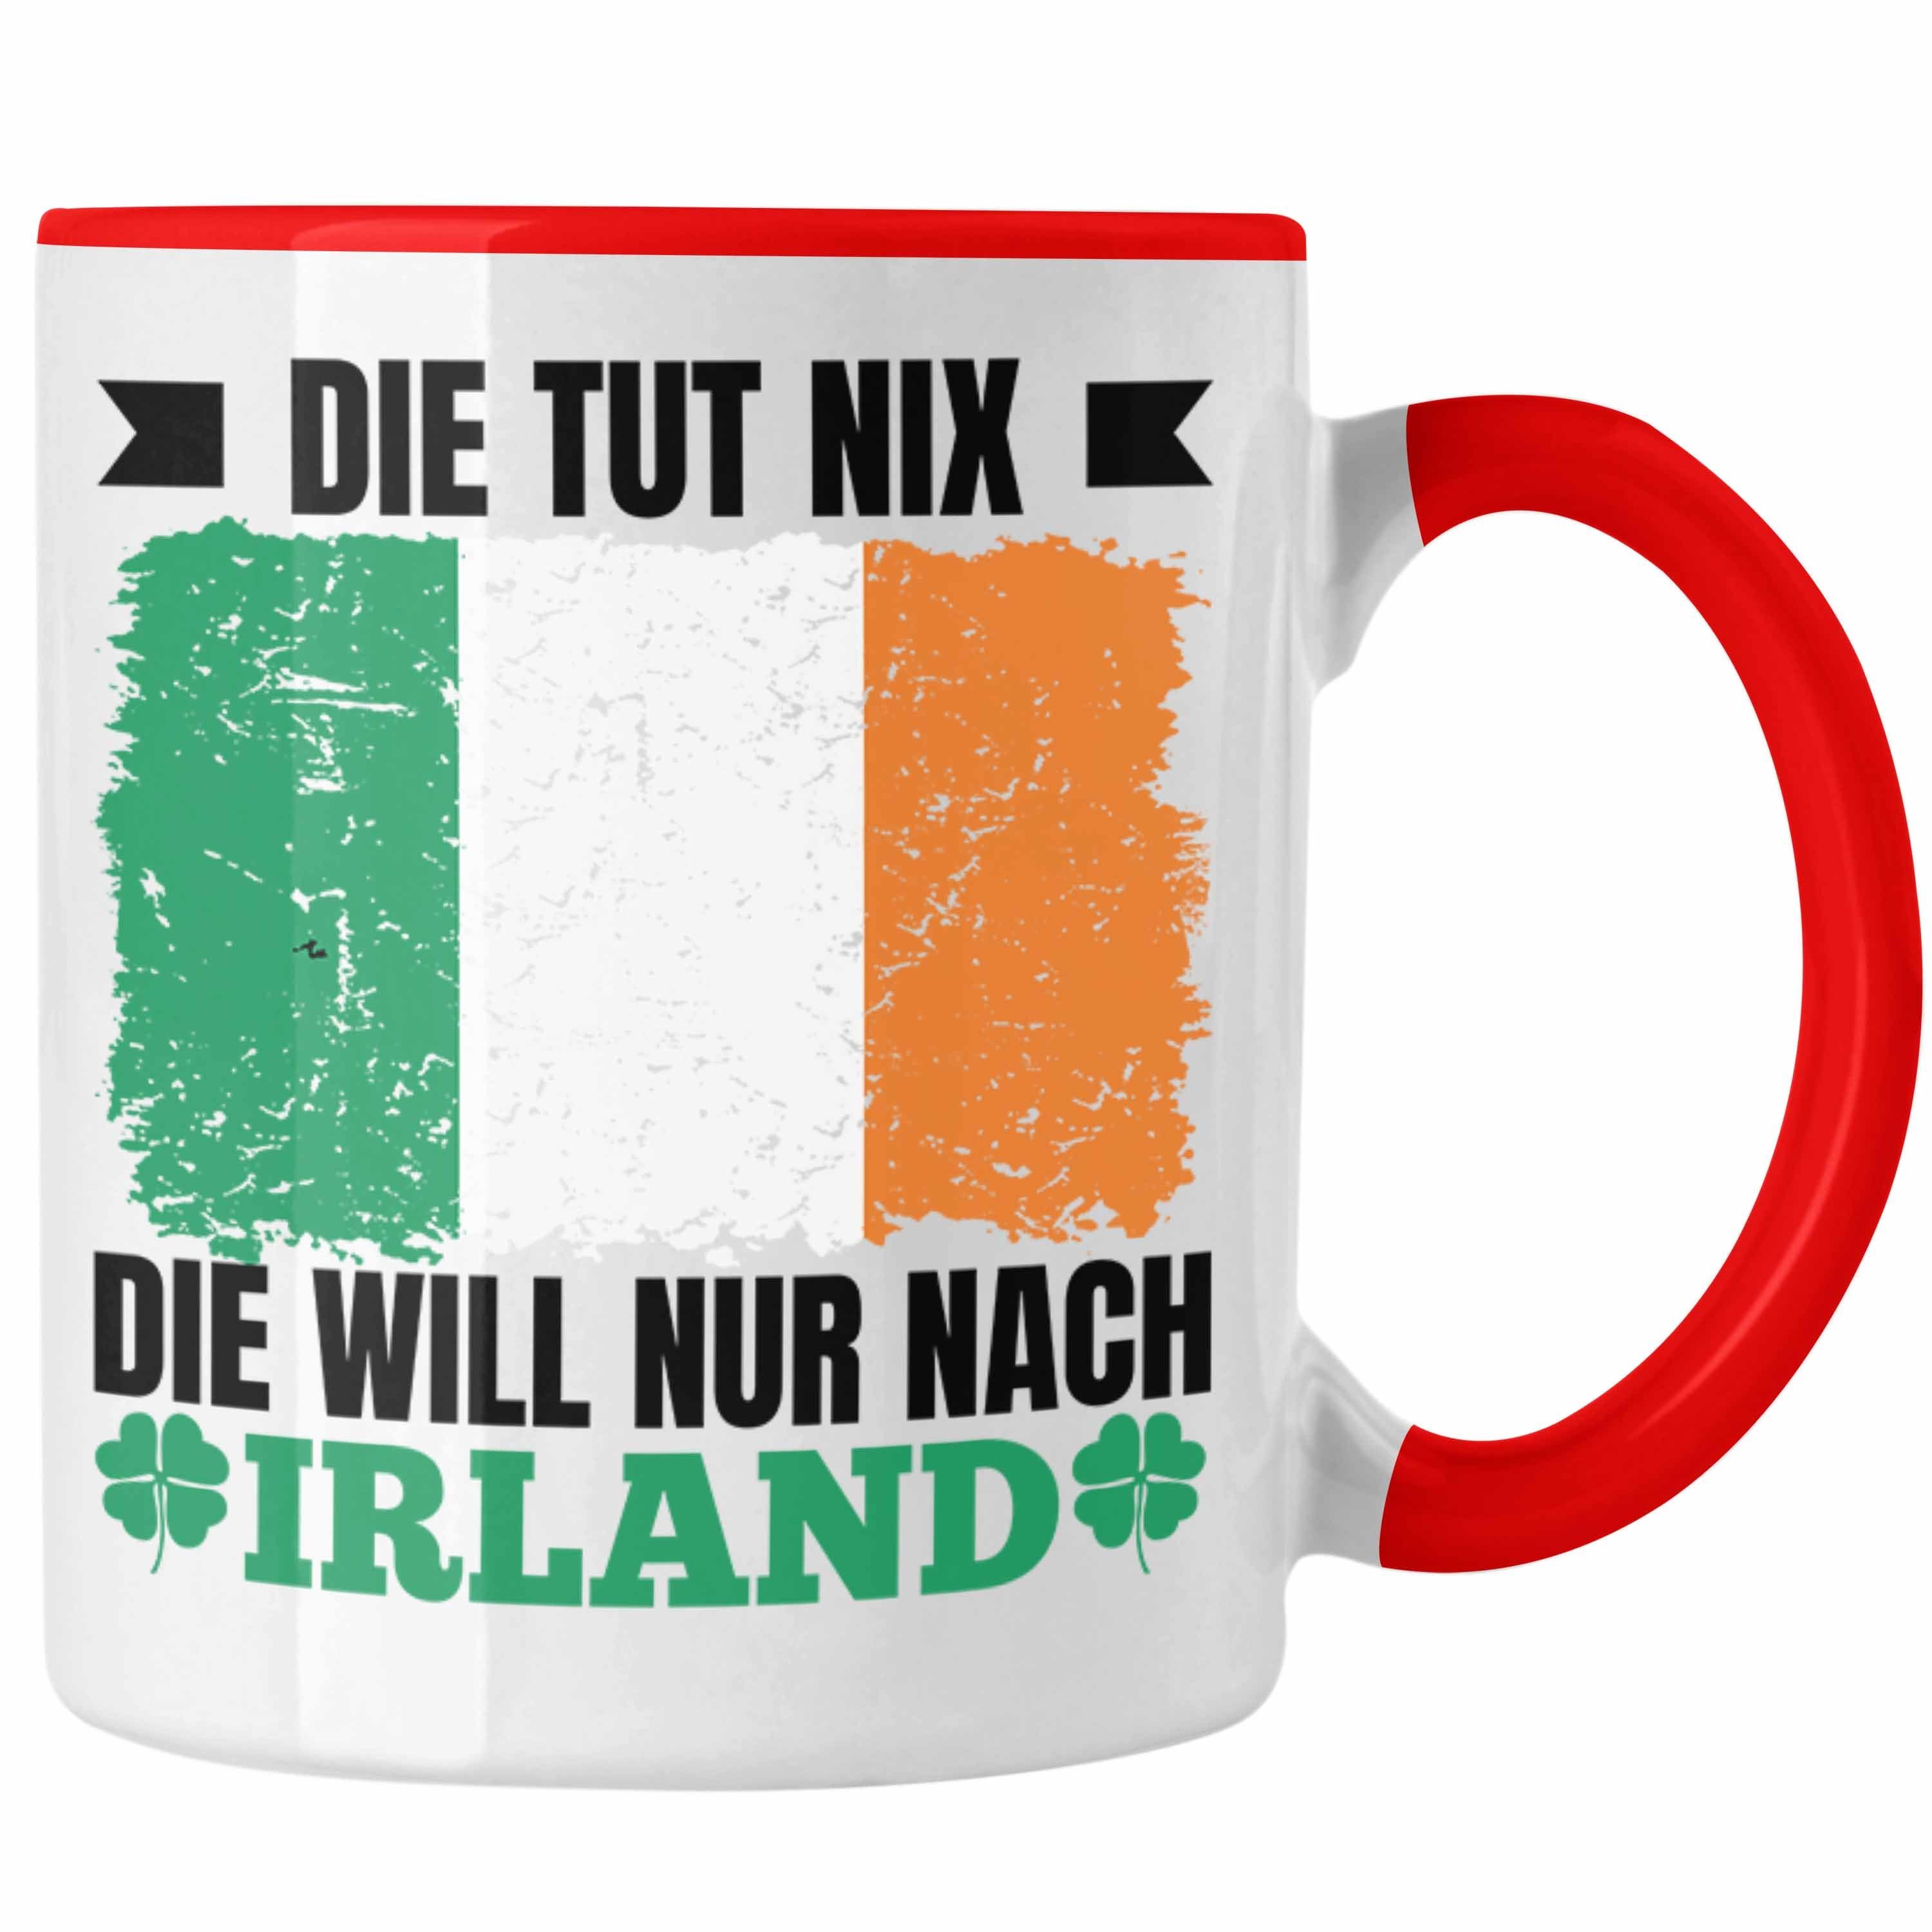 Irland Nur Rot Trendation Tut Tasse Geschenk Nach Tasse Irland Die Will Nix Die - Trendation Geschenkidee